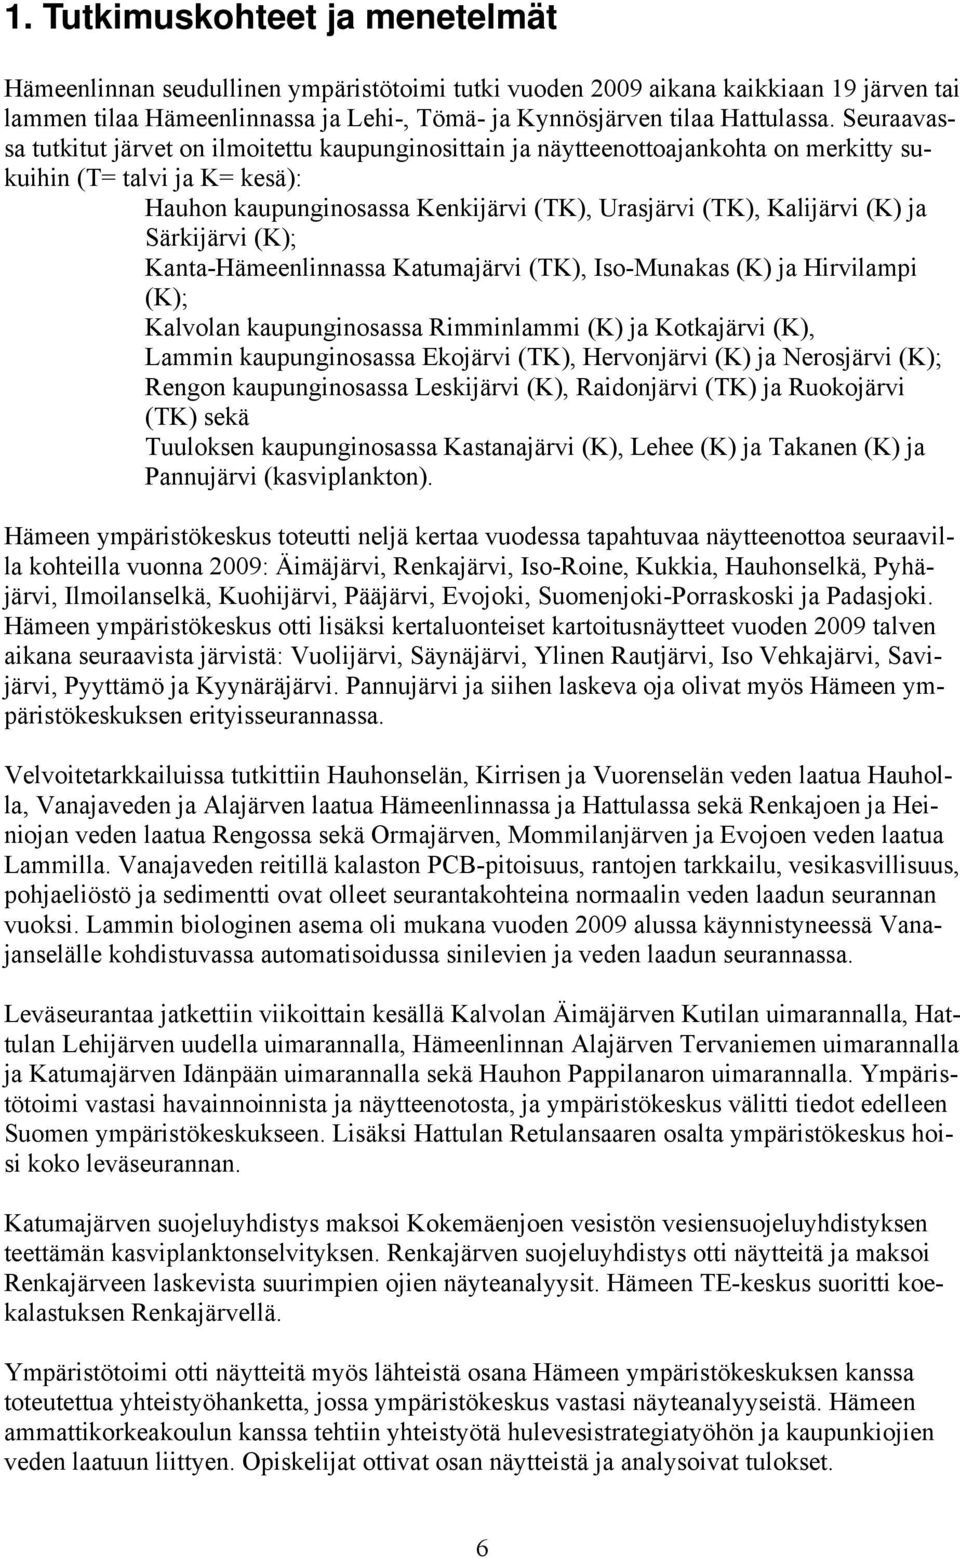 Särkijärvi (K); Kanta-Häeenlinnassa Katuajärvi (TK), Iso-Munakas (K) ja Hirvilapi (K); Kalvolan kaupunginosassa Riinlai (K) ja Kotkajärvi (K), Lain kaupunginosassa Ekojärvi (TK), Hervonjärvi (K) ja